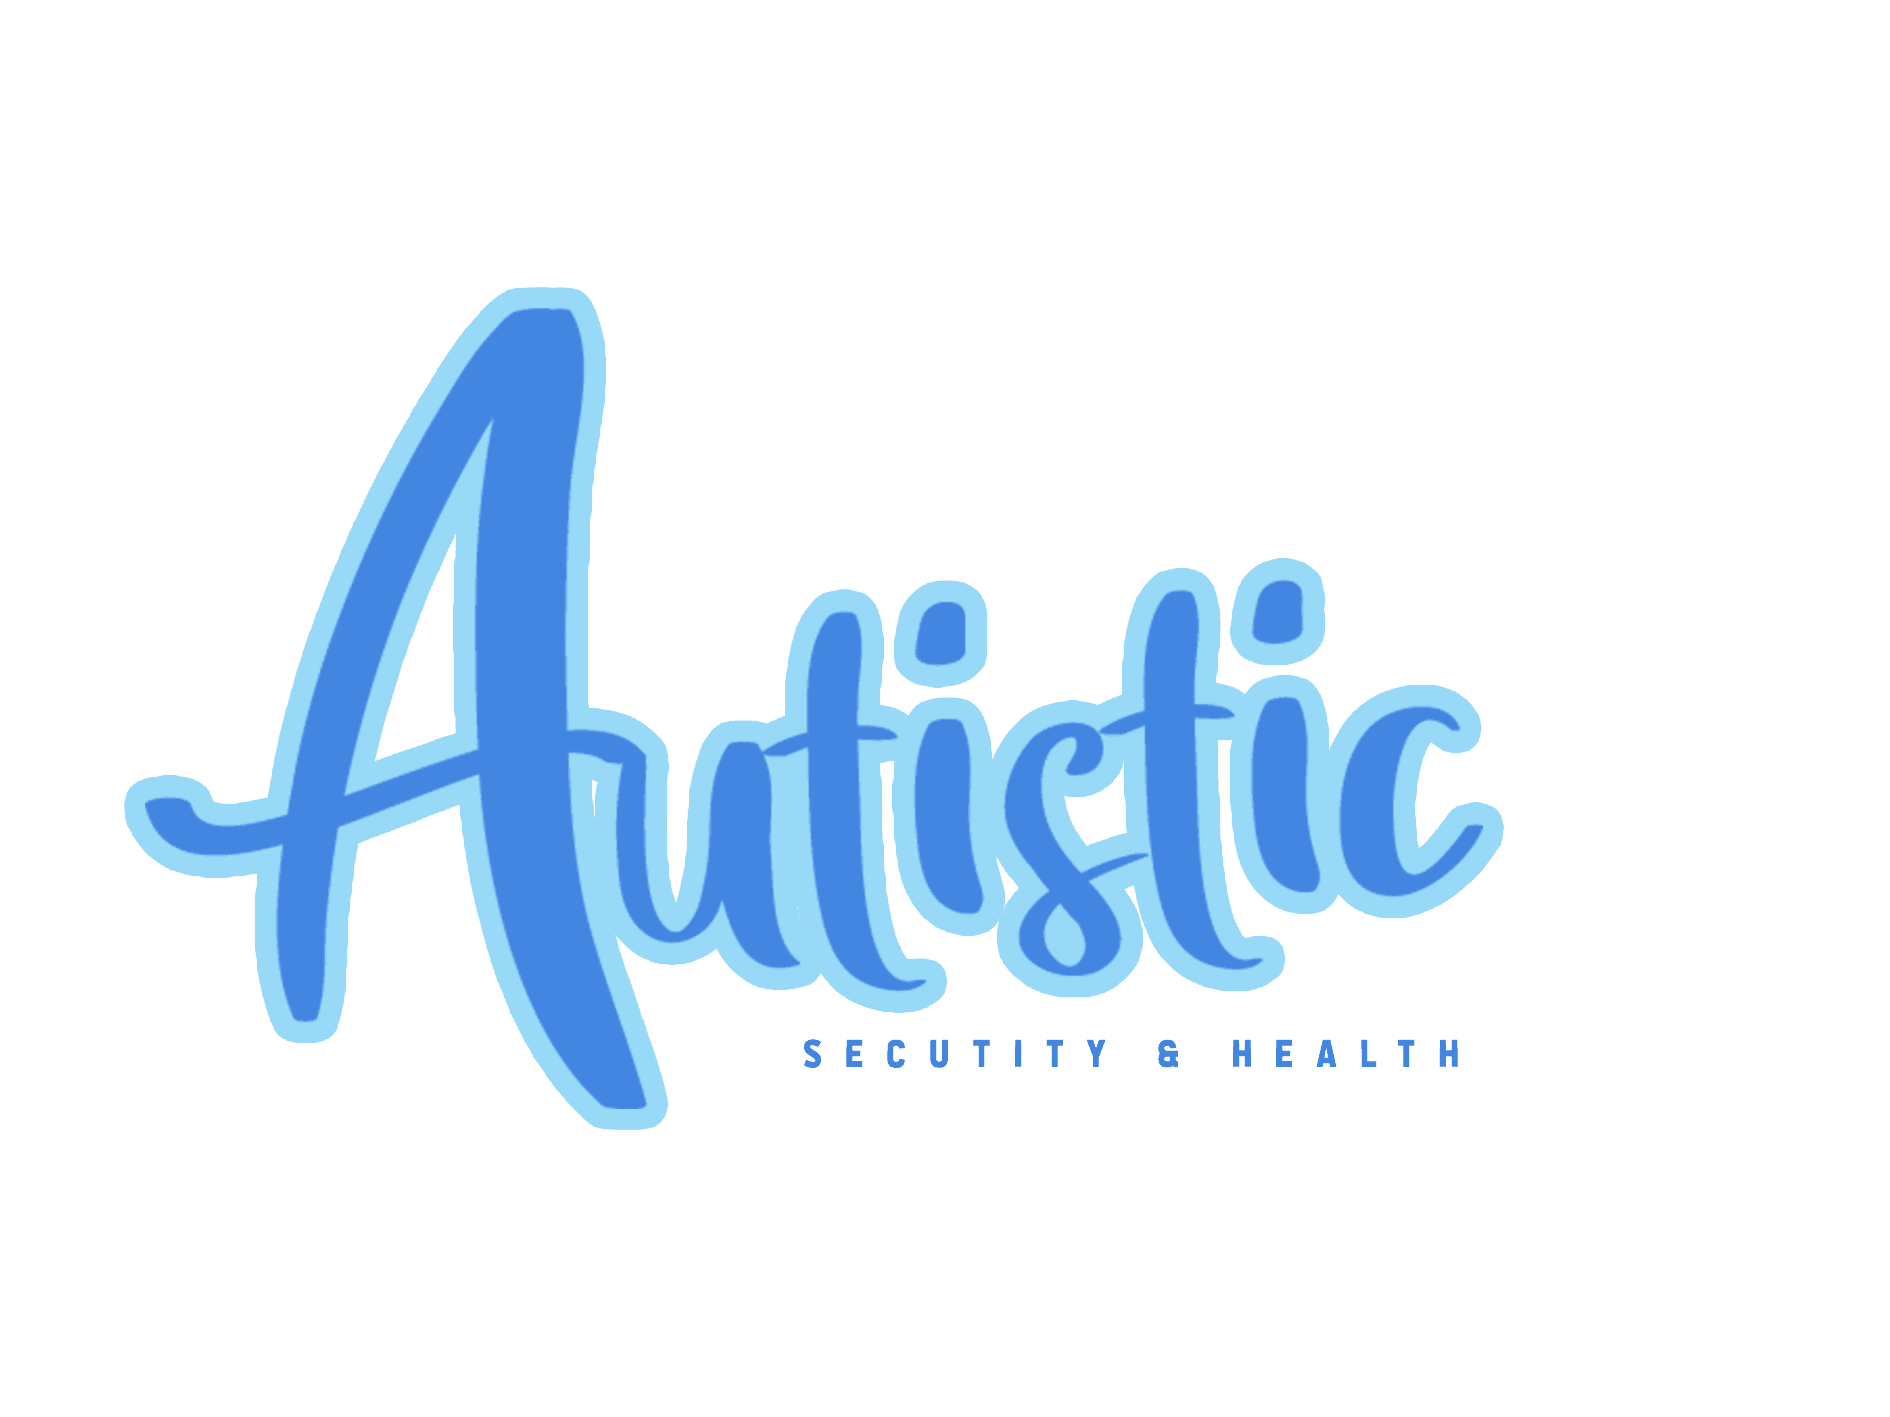 Autistic